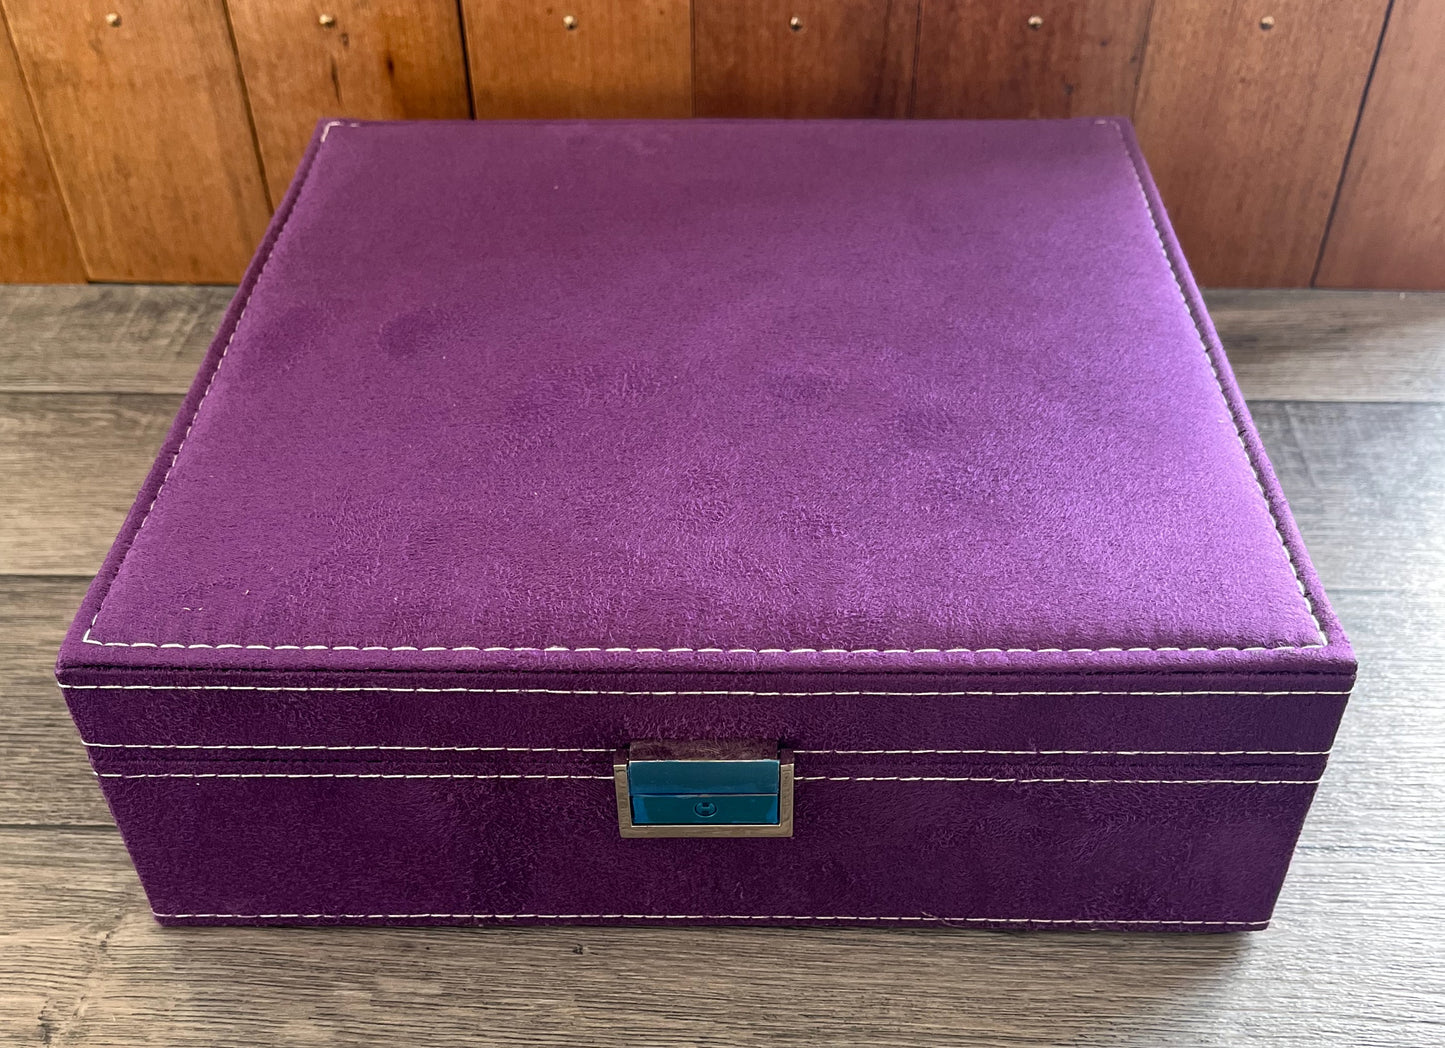 Purple Velveteen Jewellery Case / Organiser